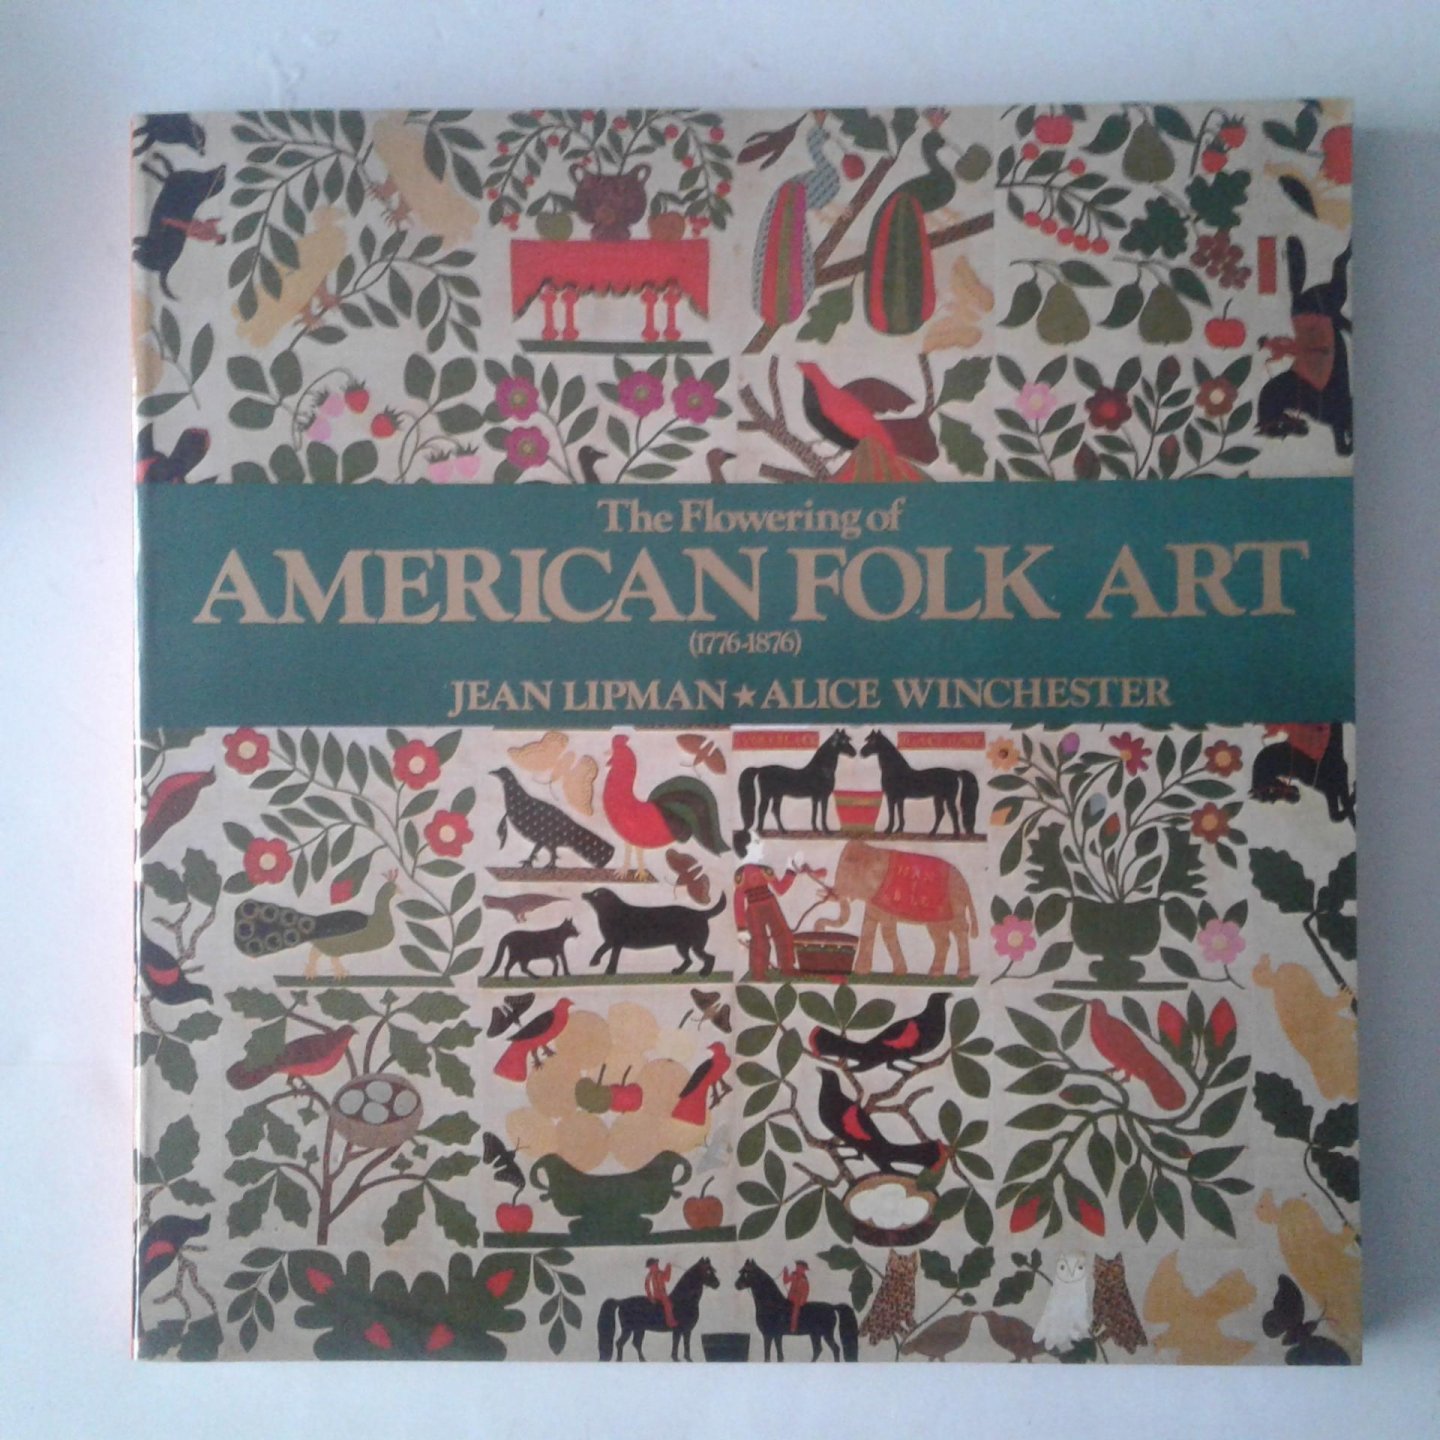 Lipman, Jean ; Winchester, Alice - The Flowering of American Folk Art ; 1776-1876